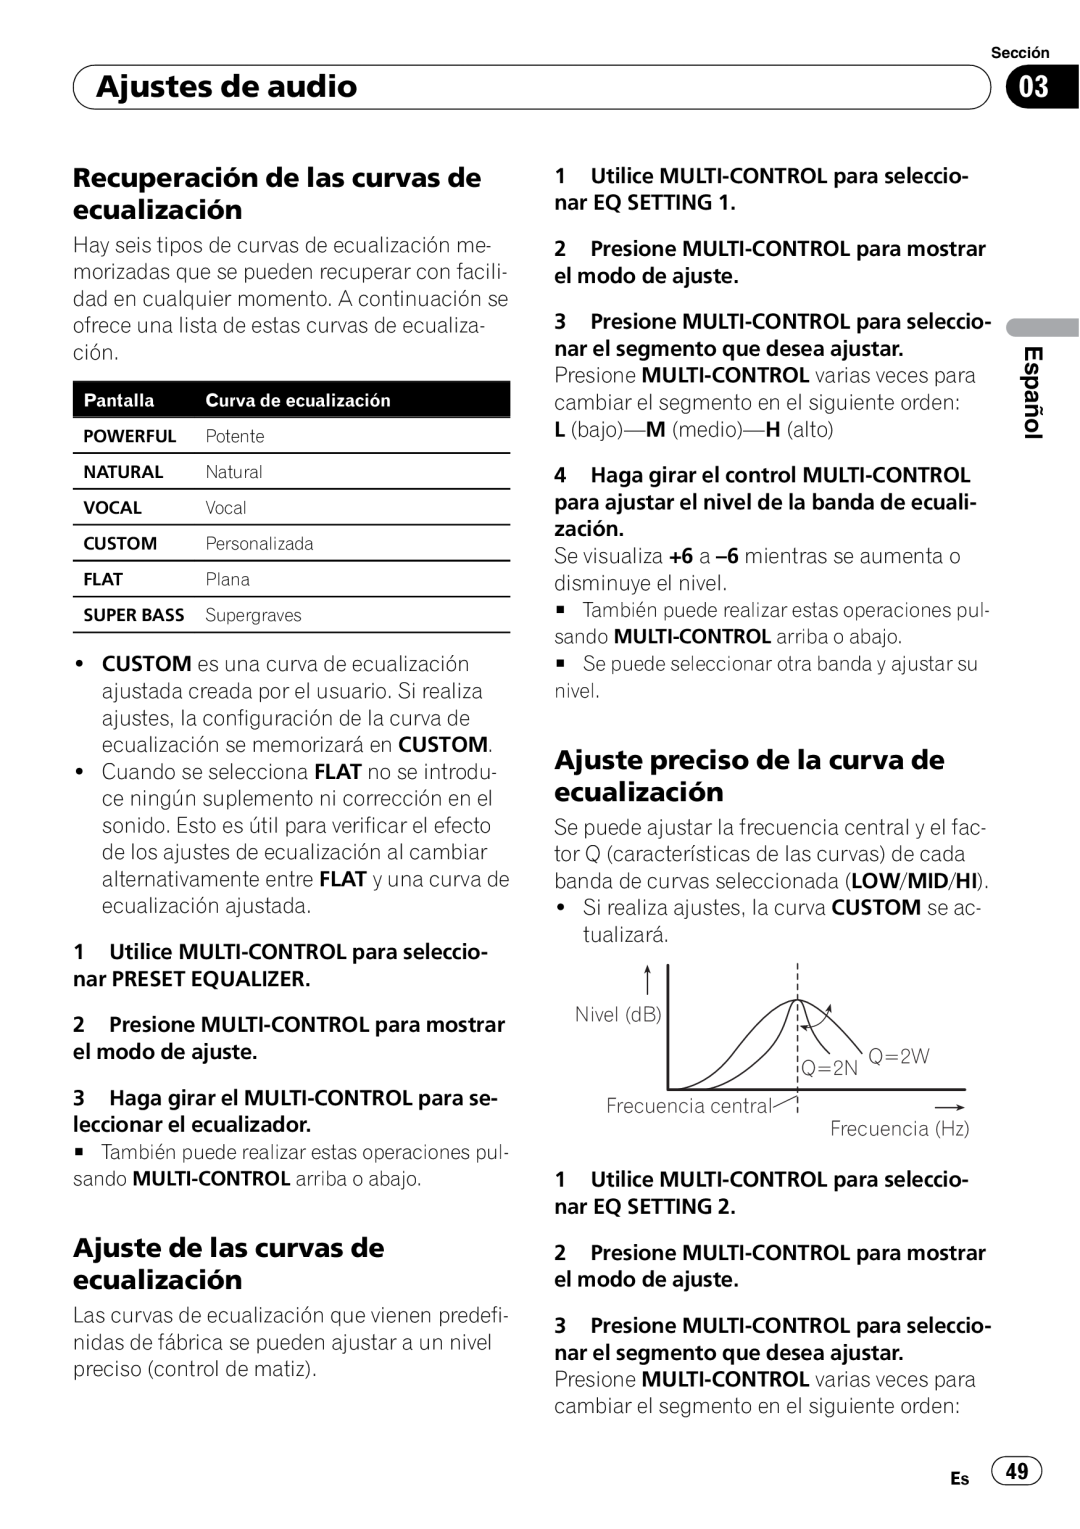 Pioneer DEH-3050UB Recuperación de las curvas de ecualización, Ajuste preciso de la curva de ecualización, Español 